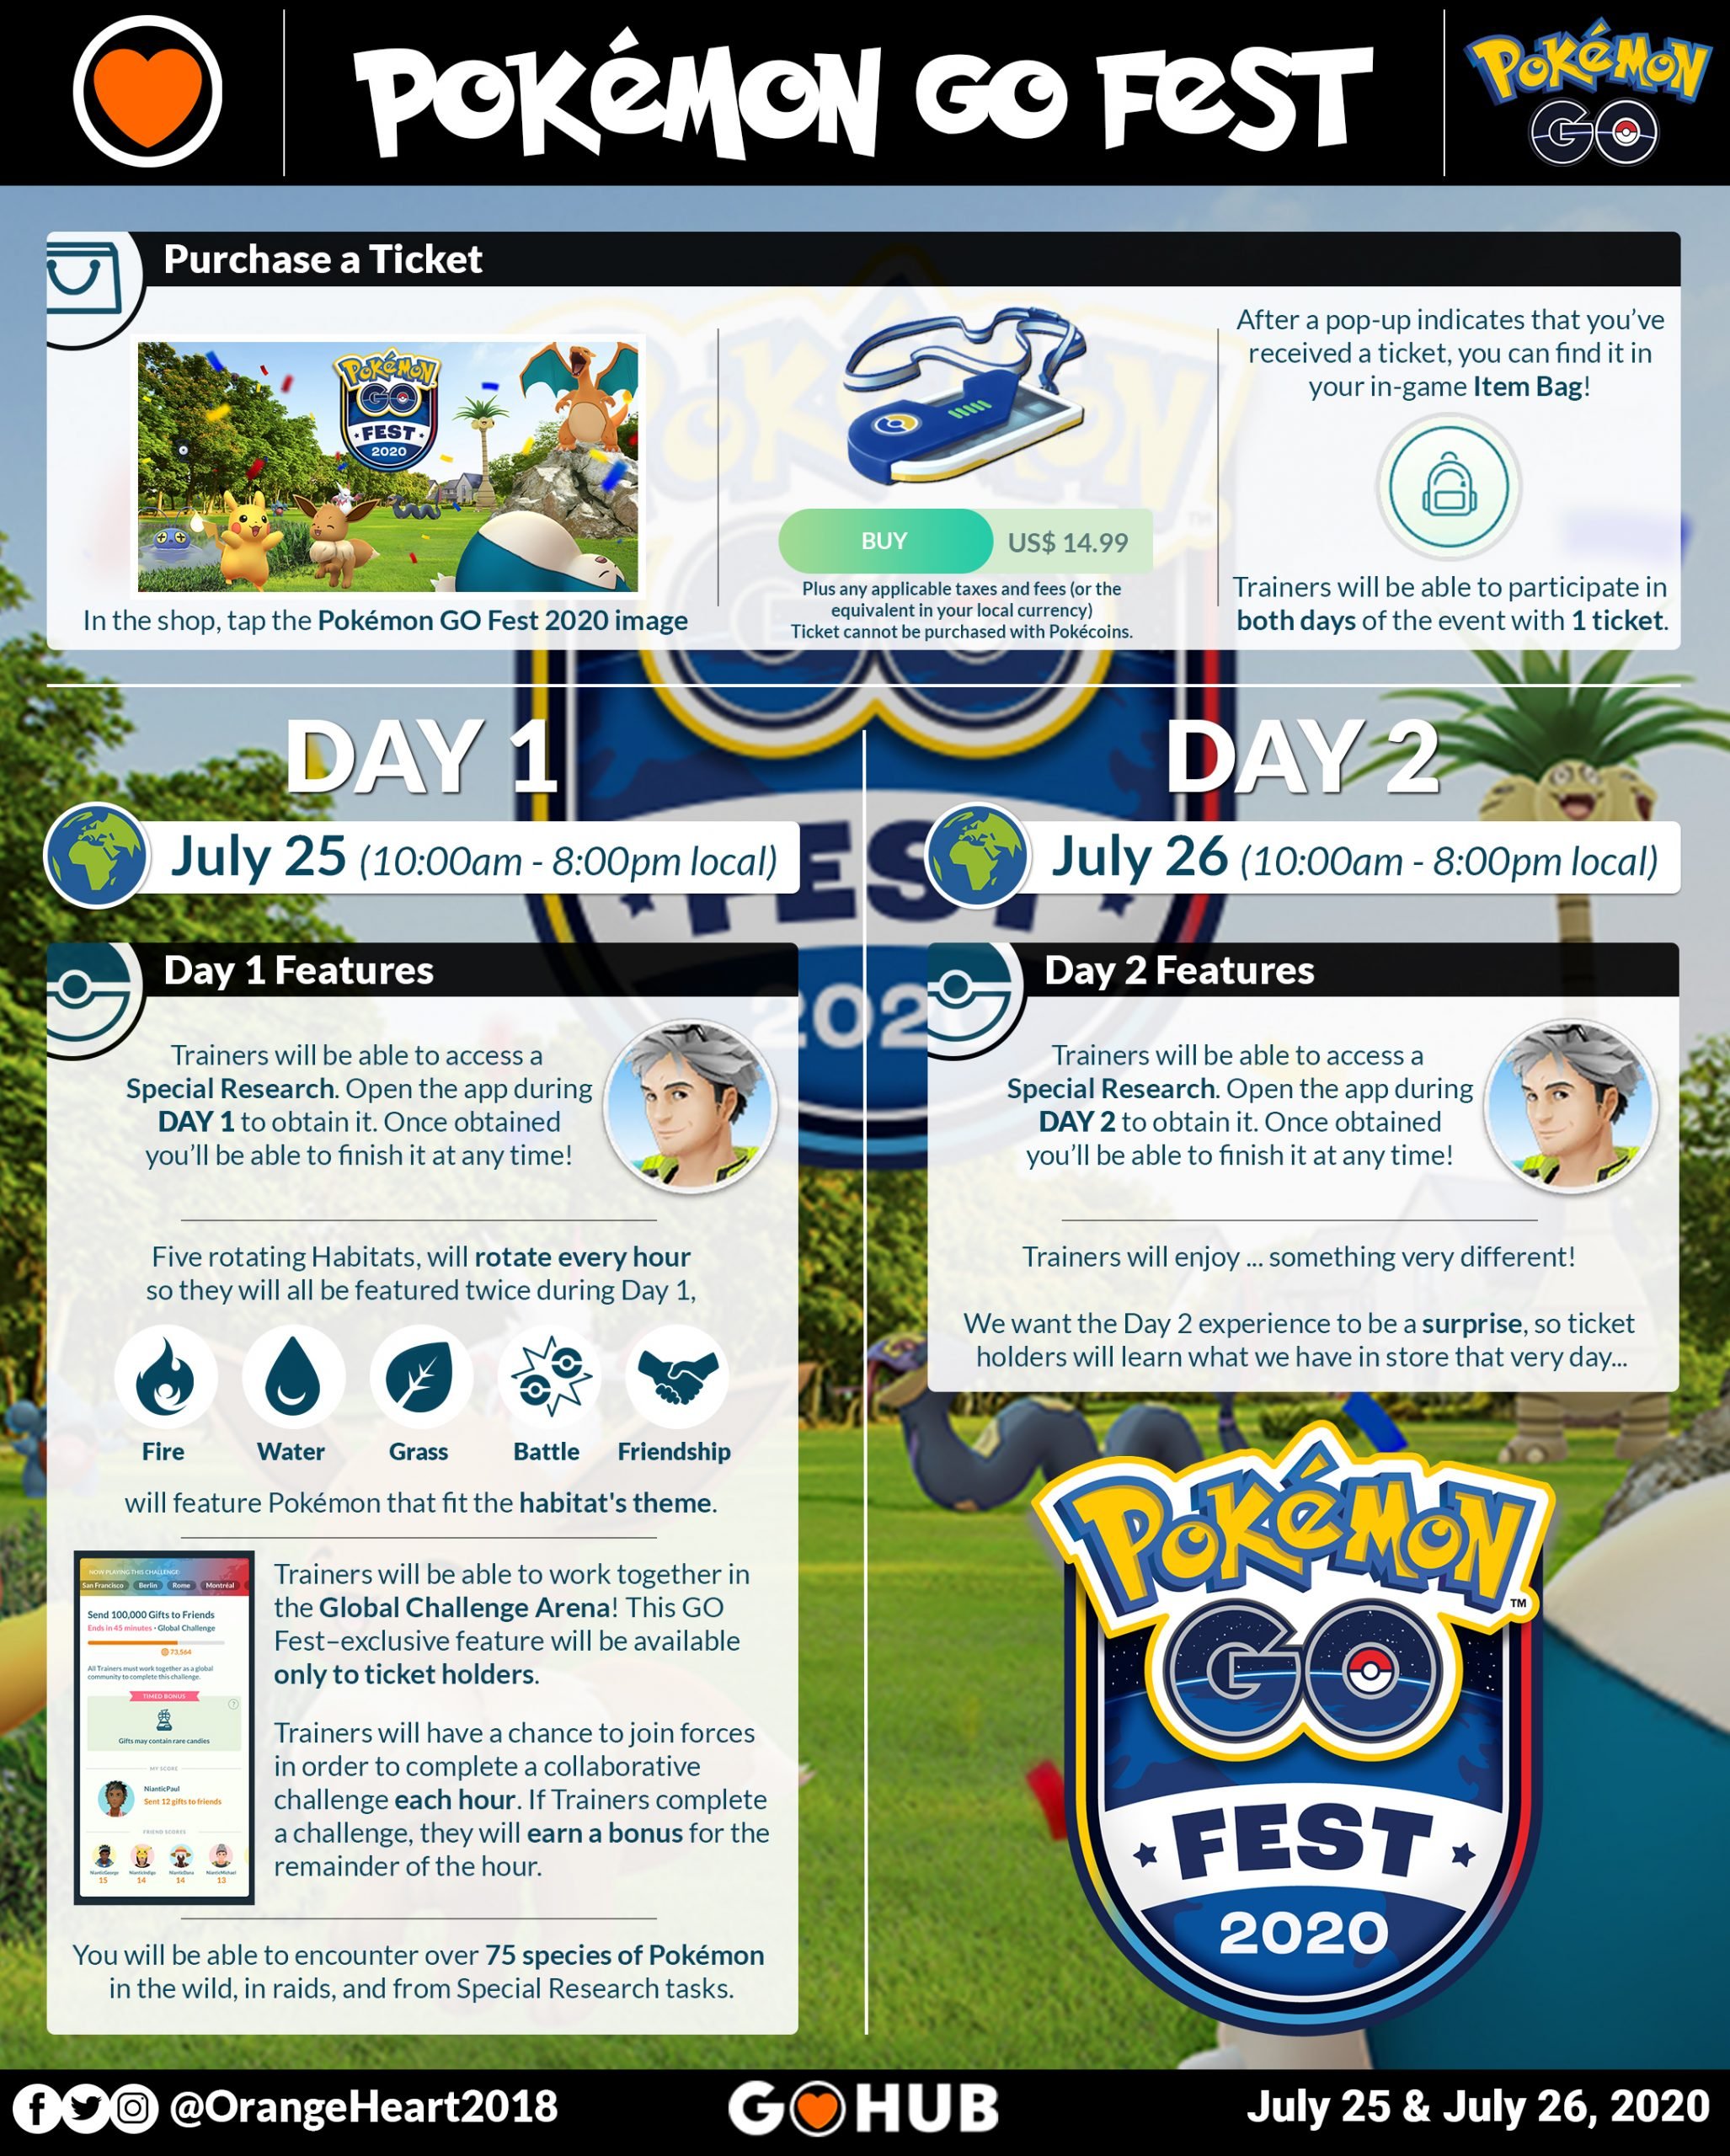 Pokémon HOME 2020 Event Guide